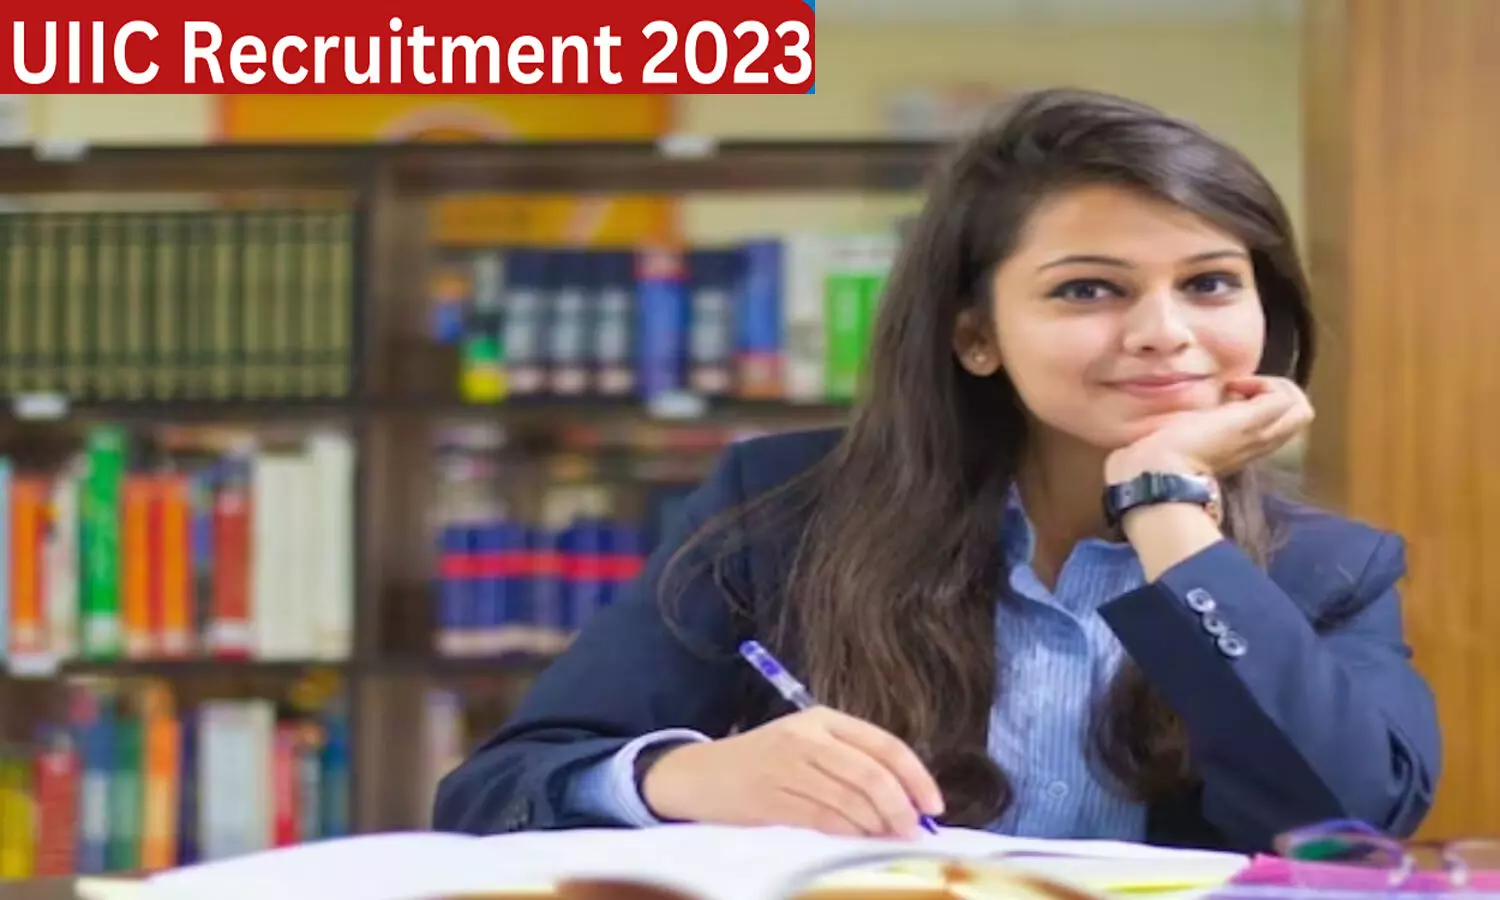 UIIC Recruitment 2023: यूनाइटेड इंडिया इंश्योरेंस कंपनी में 100 पदों पर निकली वैकेंसी